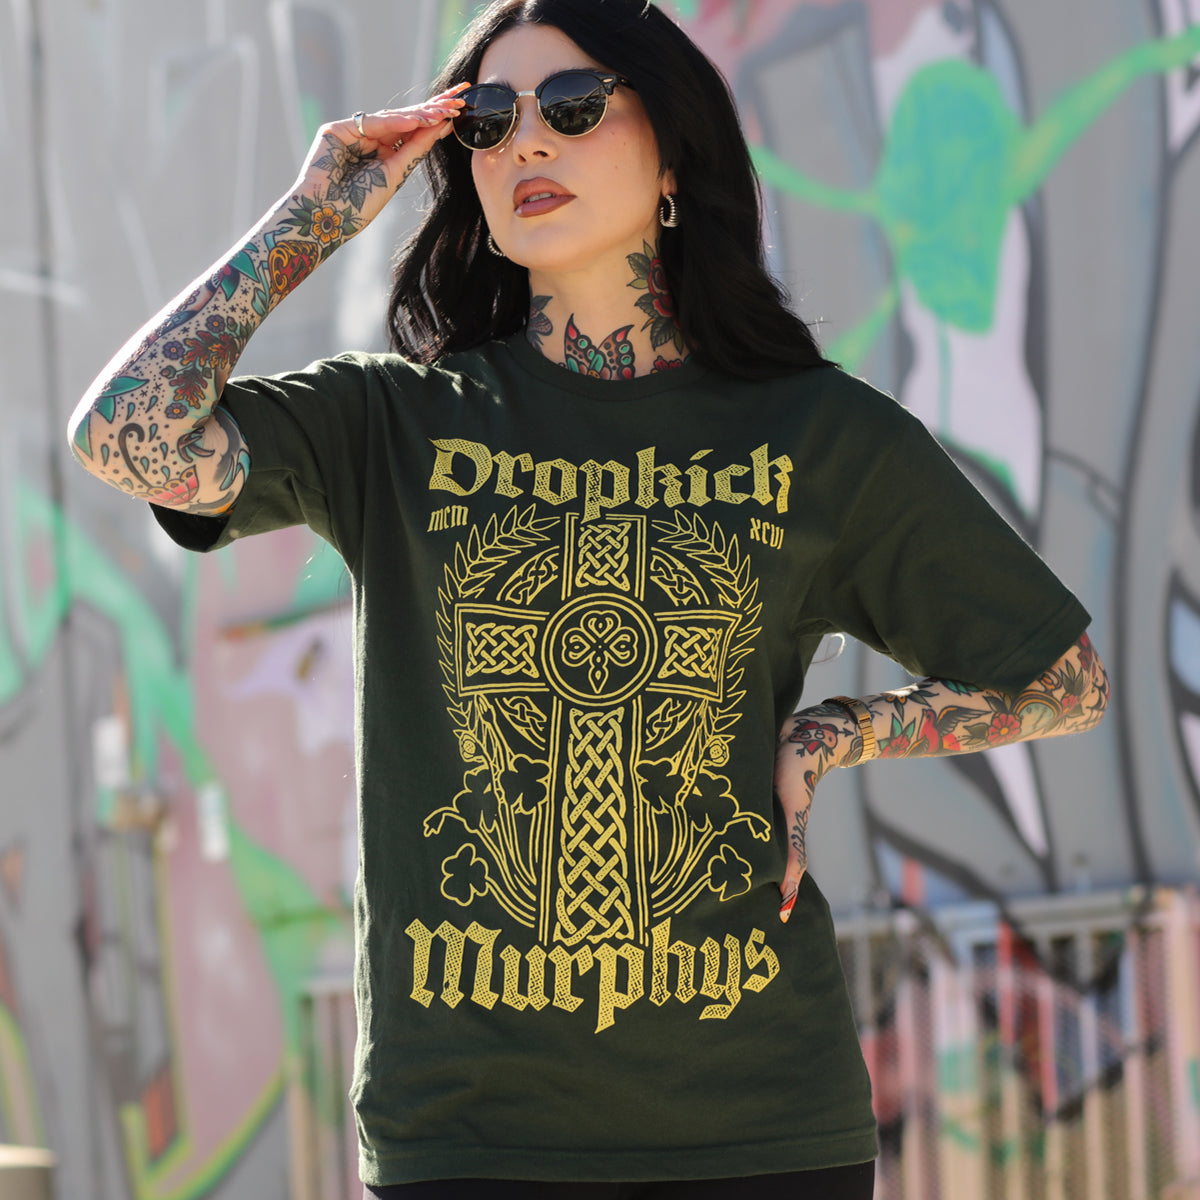 Dropkick Murphys Online Store